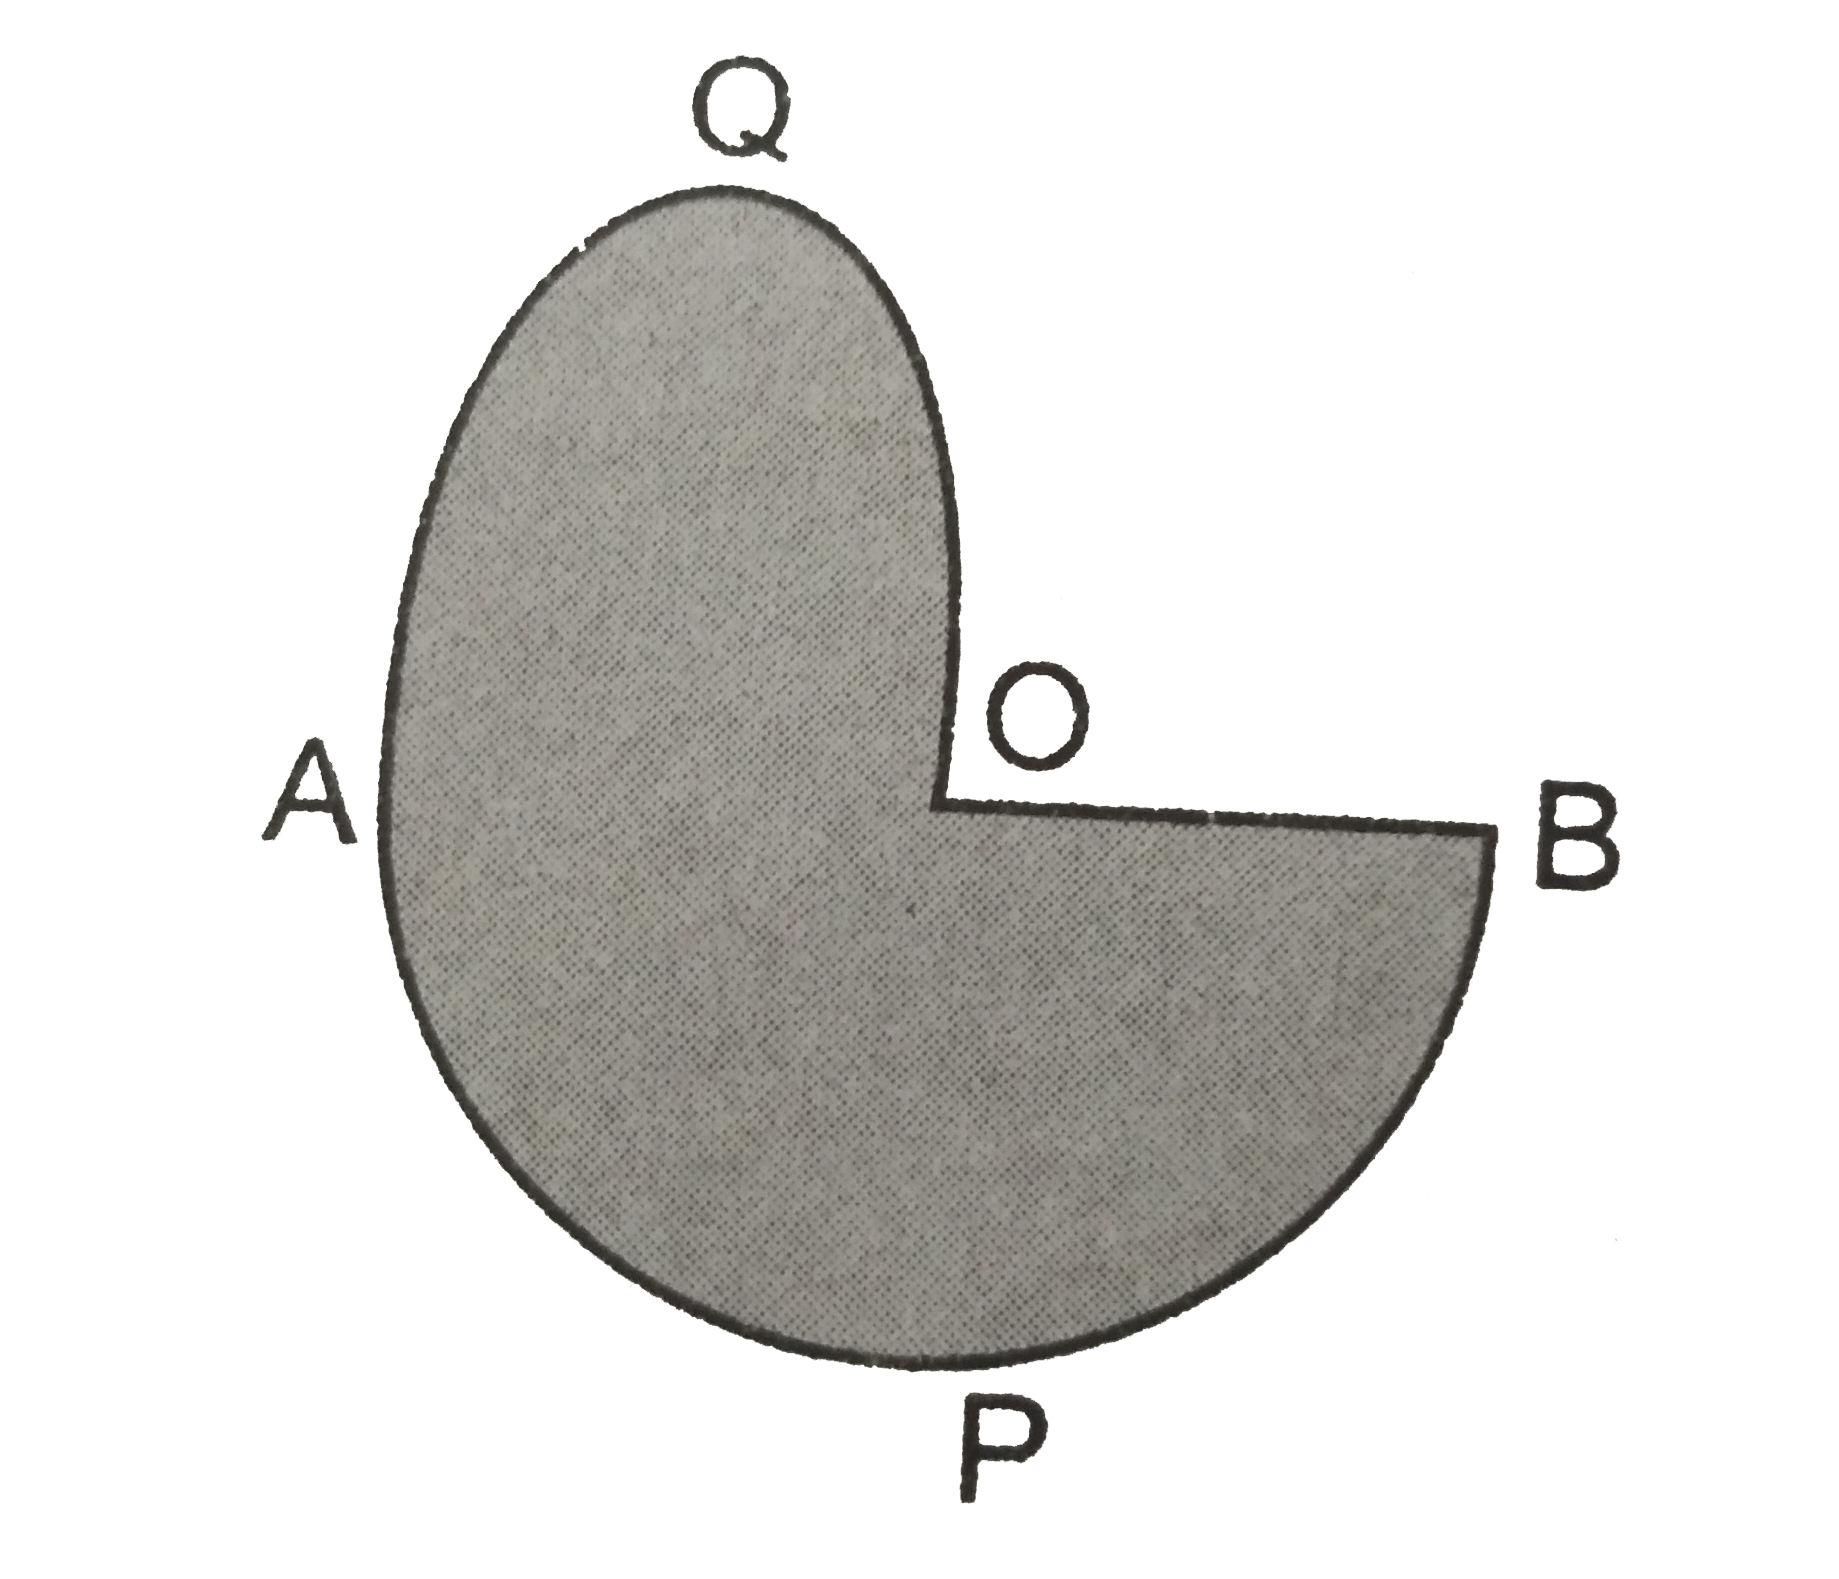 आकृति  में  ,APB  और AQO  अर्द्धवृत है  और AO =OB  है  यदि  आकृति  की परिभाषा  40 सेमी  है  तो छायांकित  भाग  का क्षेत्रफल  ज्ञात कीजिए ।